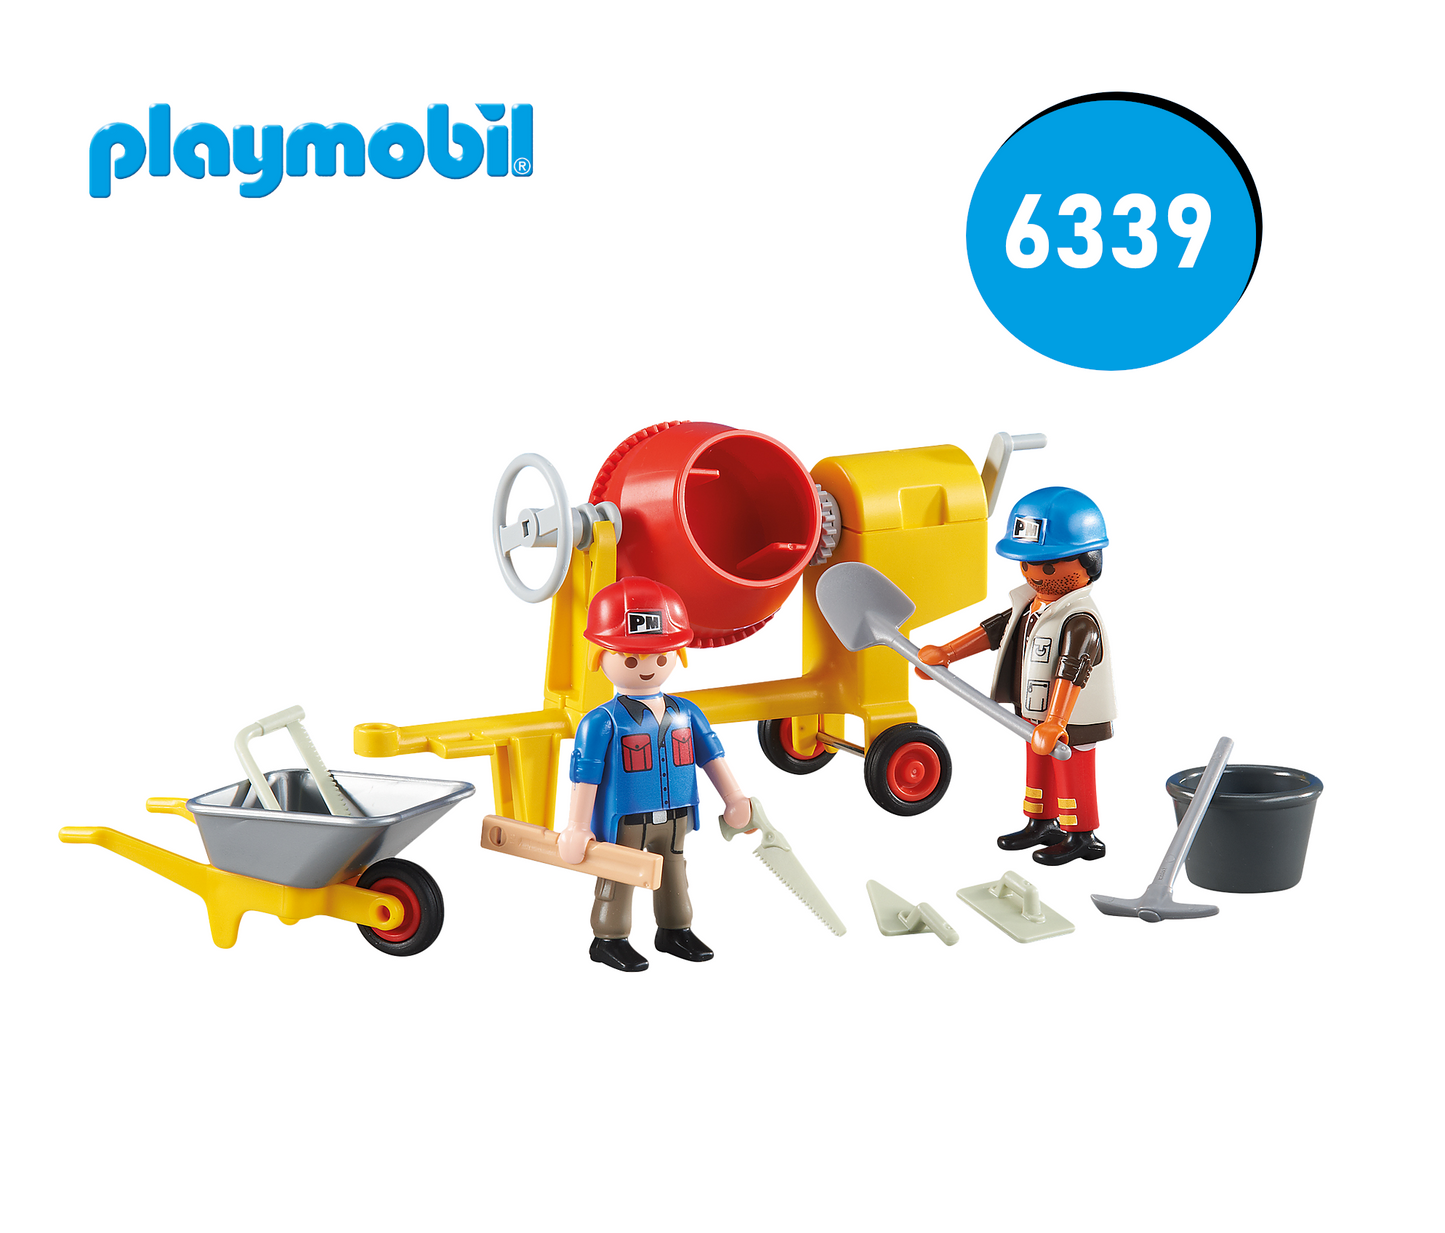 Playmobil 6339 - Betonmischer mit 2 Bauarbeiter - Baustelle Zubehör